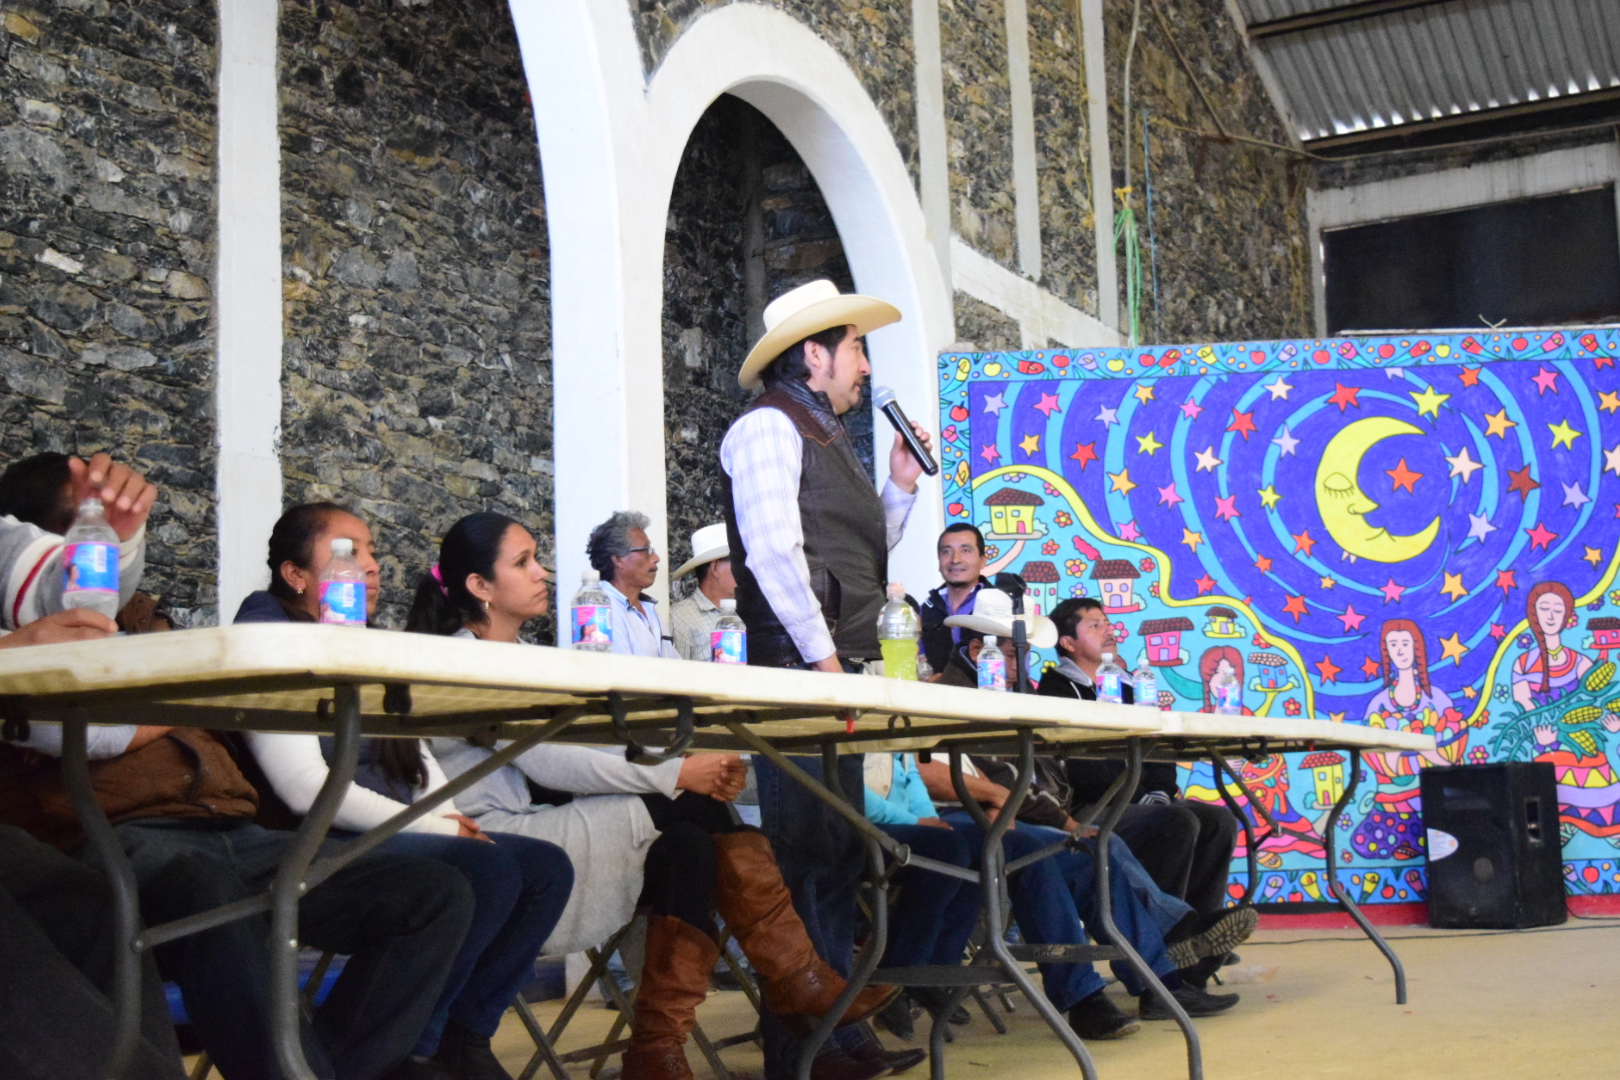 Cientos marchan en Zoquitlán y denuncian presiones para aprobar hidroeléctrica